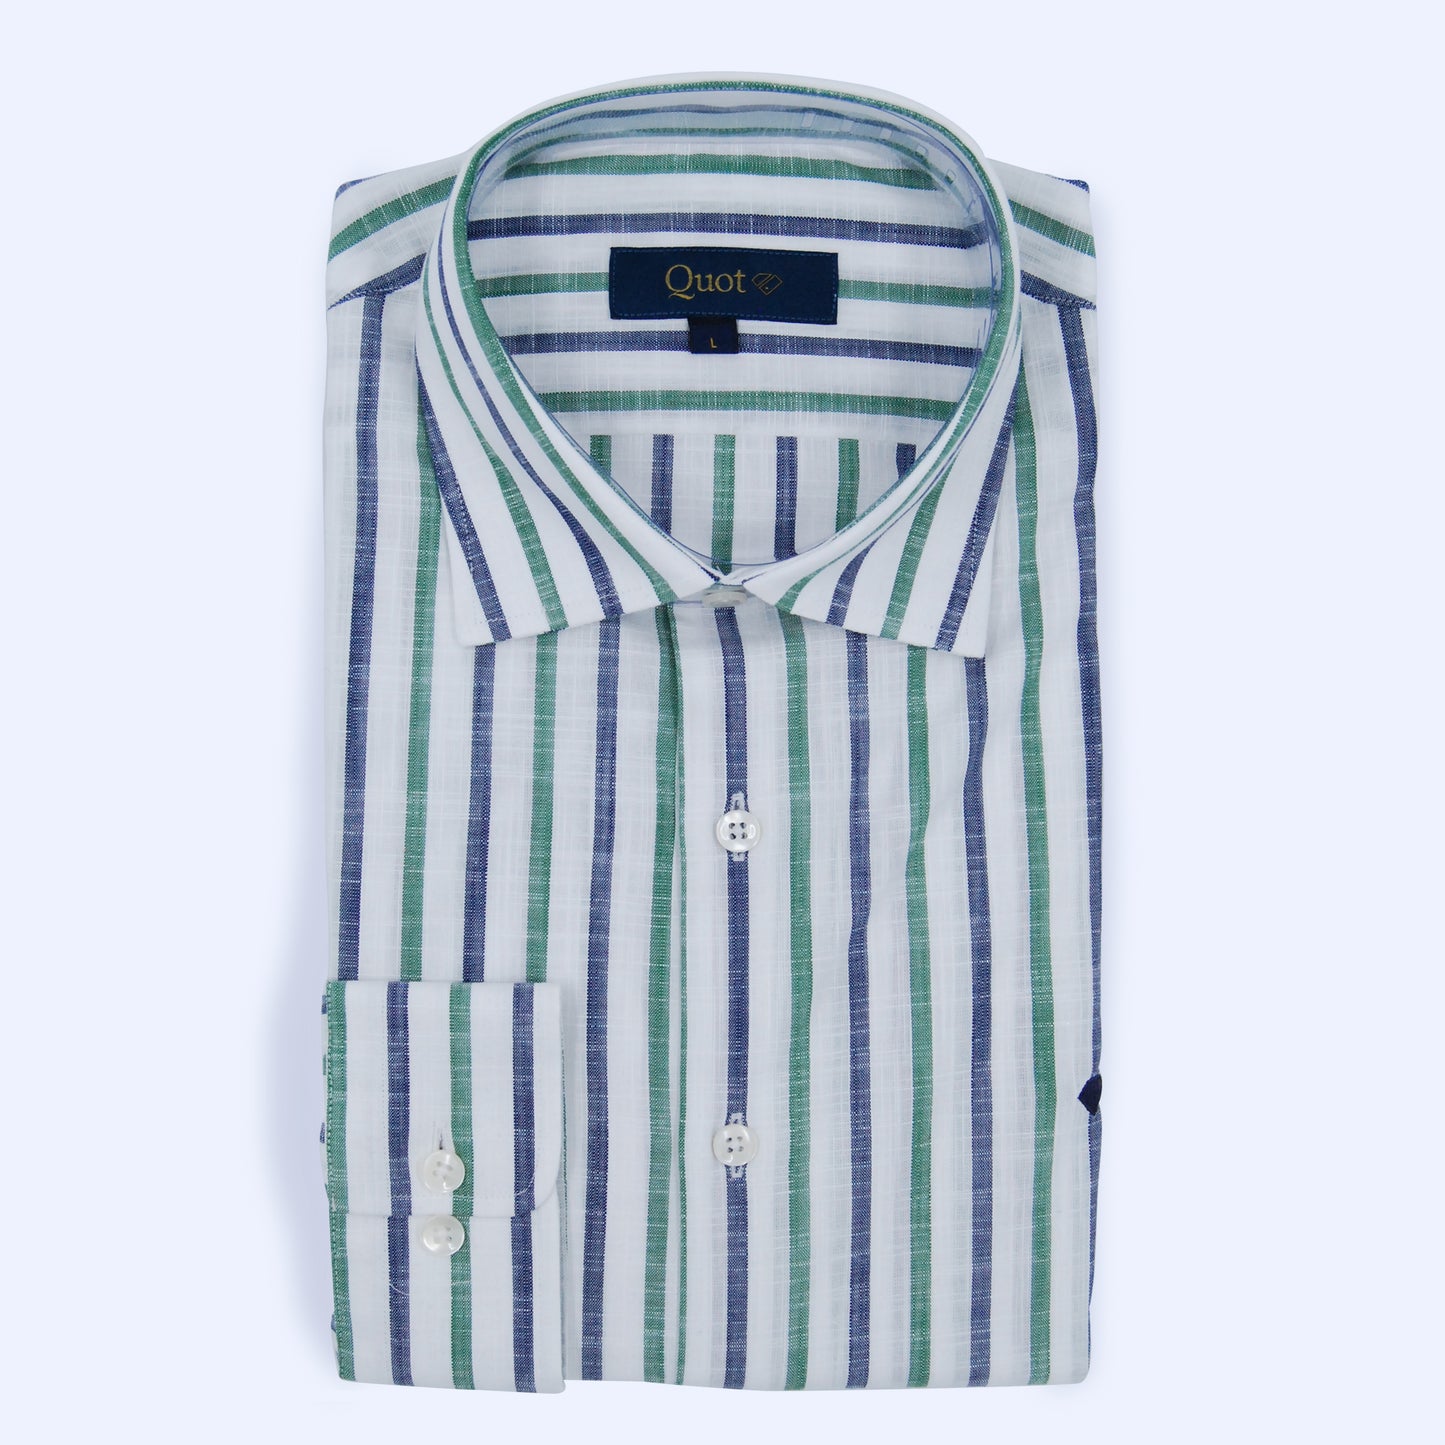 Camisa 100% algodón - Apariencia lino verde y azul